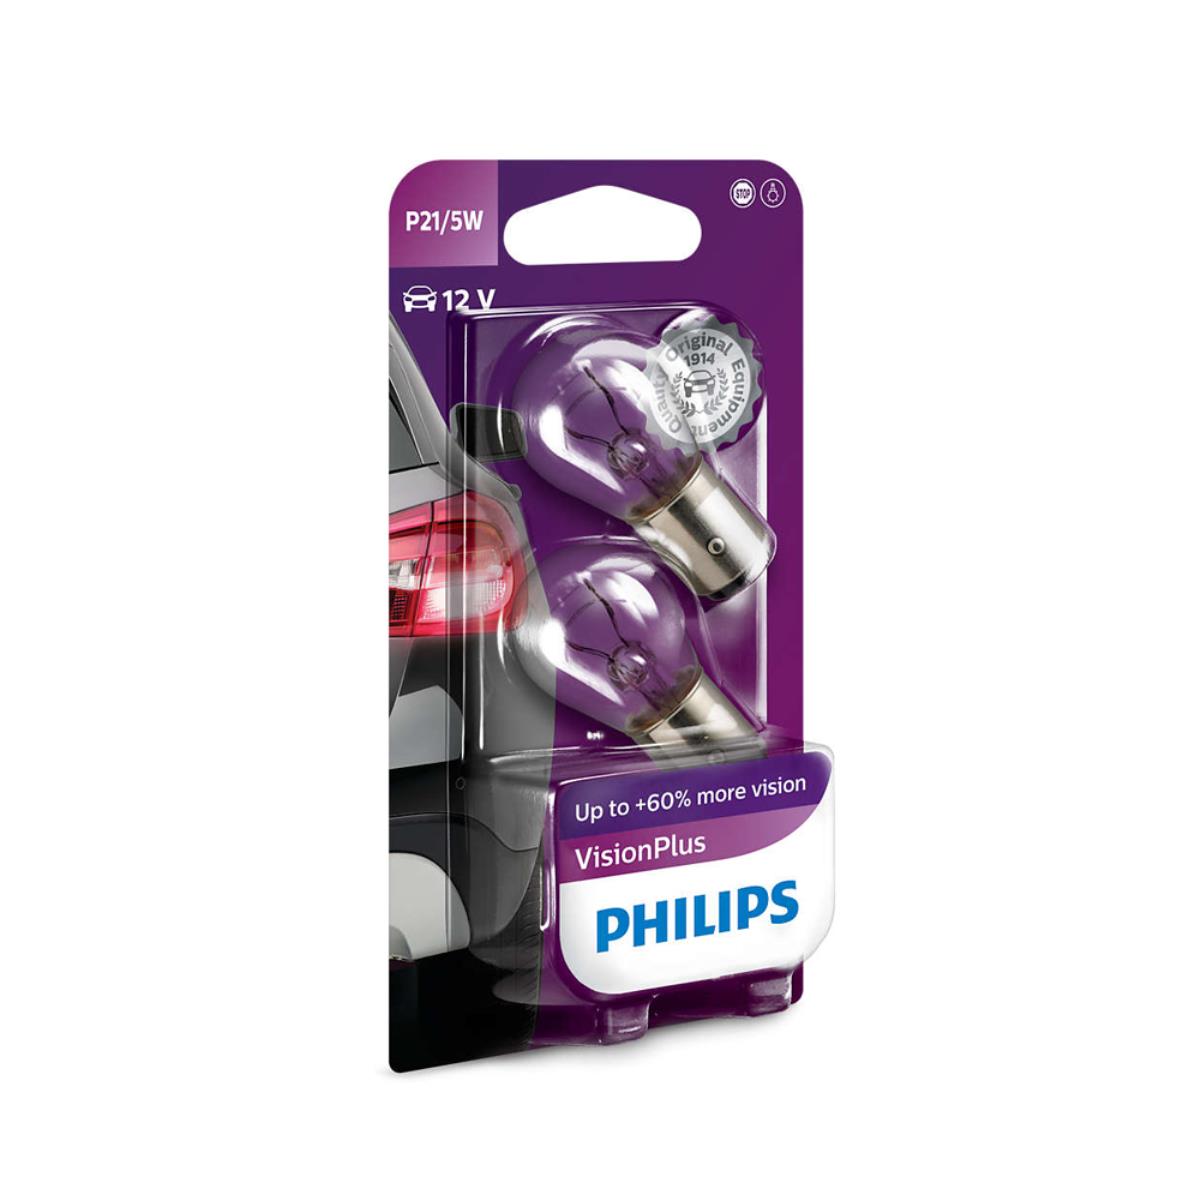 Philips VisionPlus P21/5W Signalbeleuchtug und Innebeleuchtung